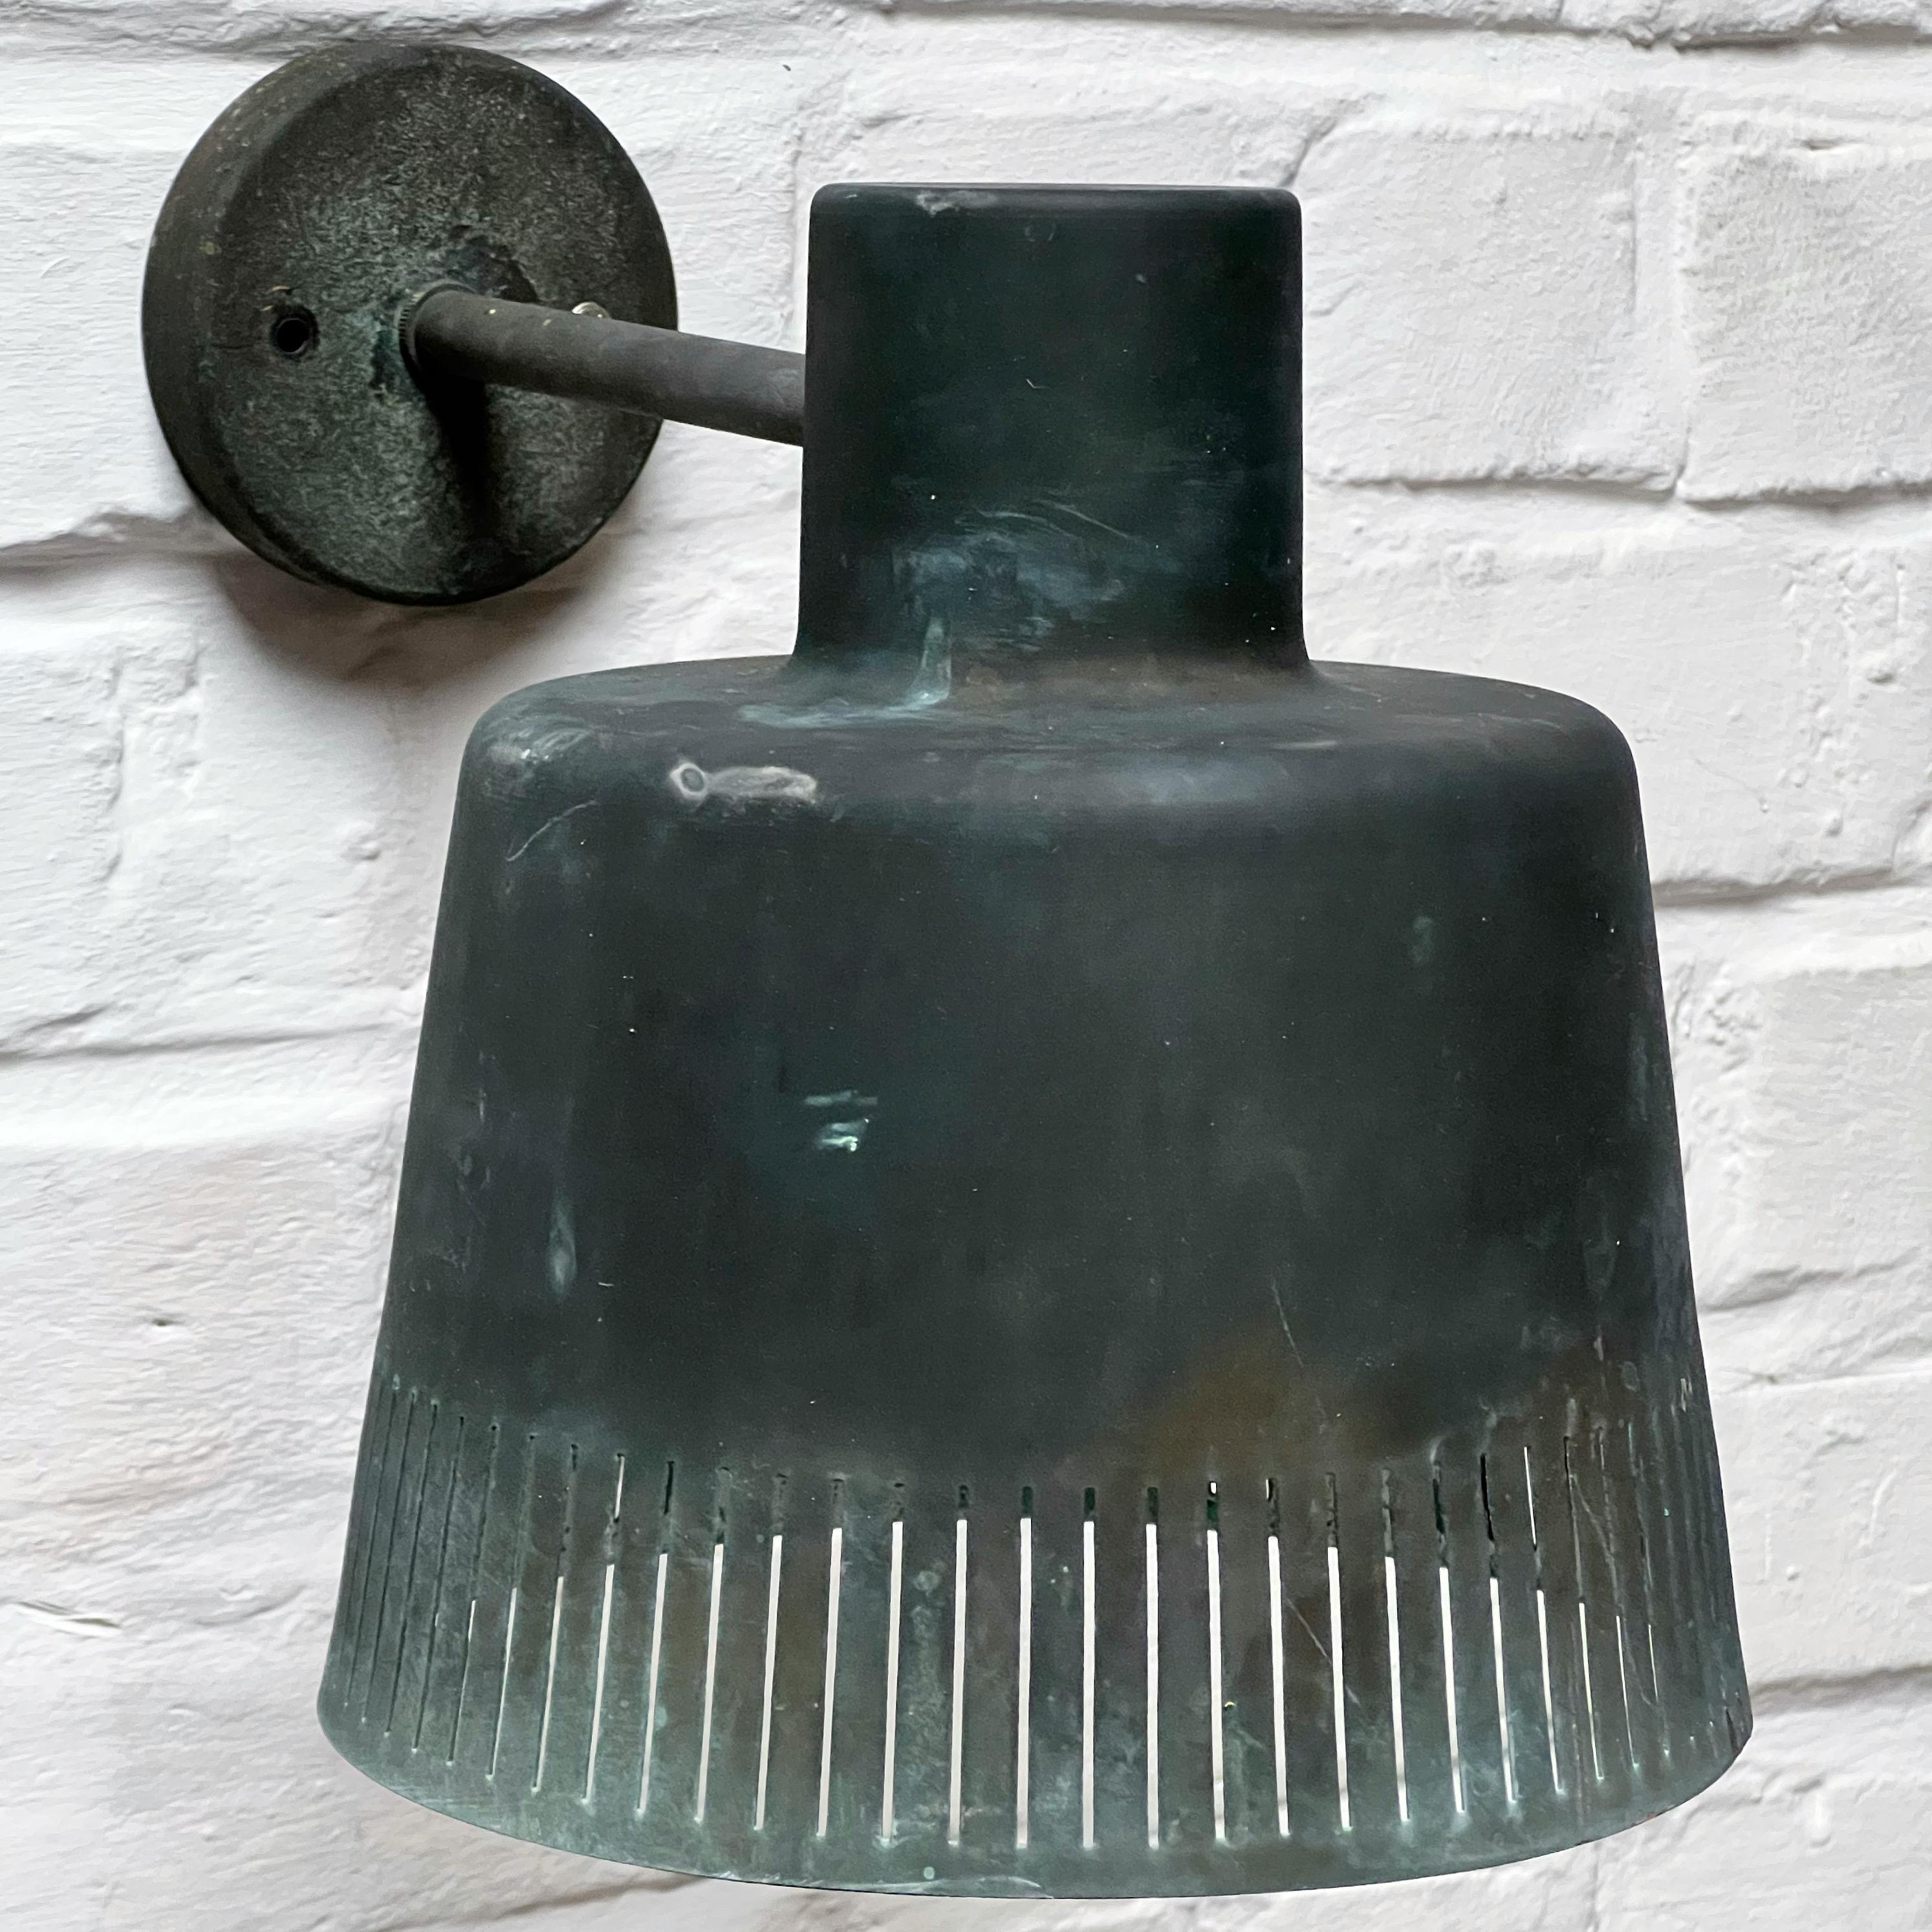 Scandinavian Modern Pair of Copper Wall Lamps by Hans Bergström, Ateljé Lyktan 1940/50s Sweden Rare